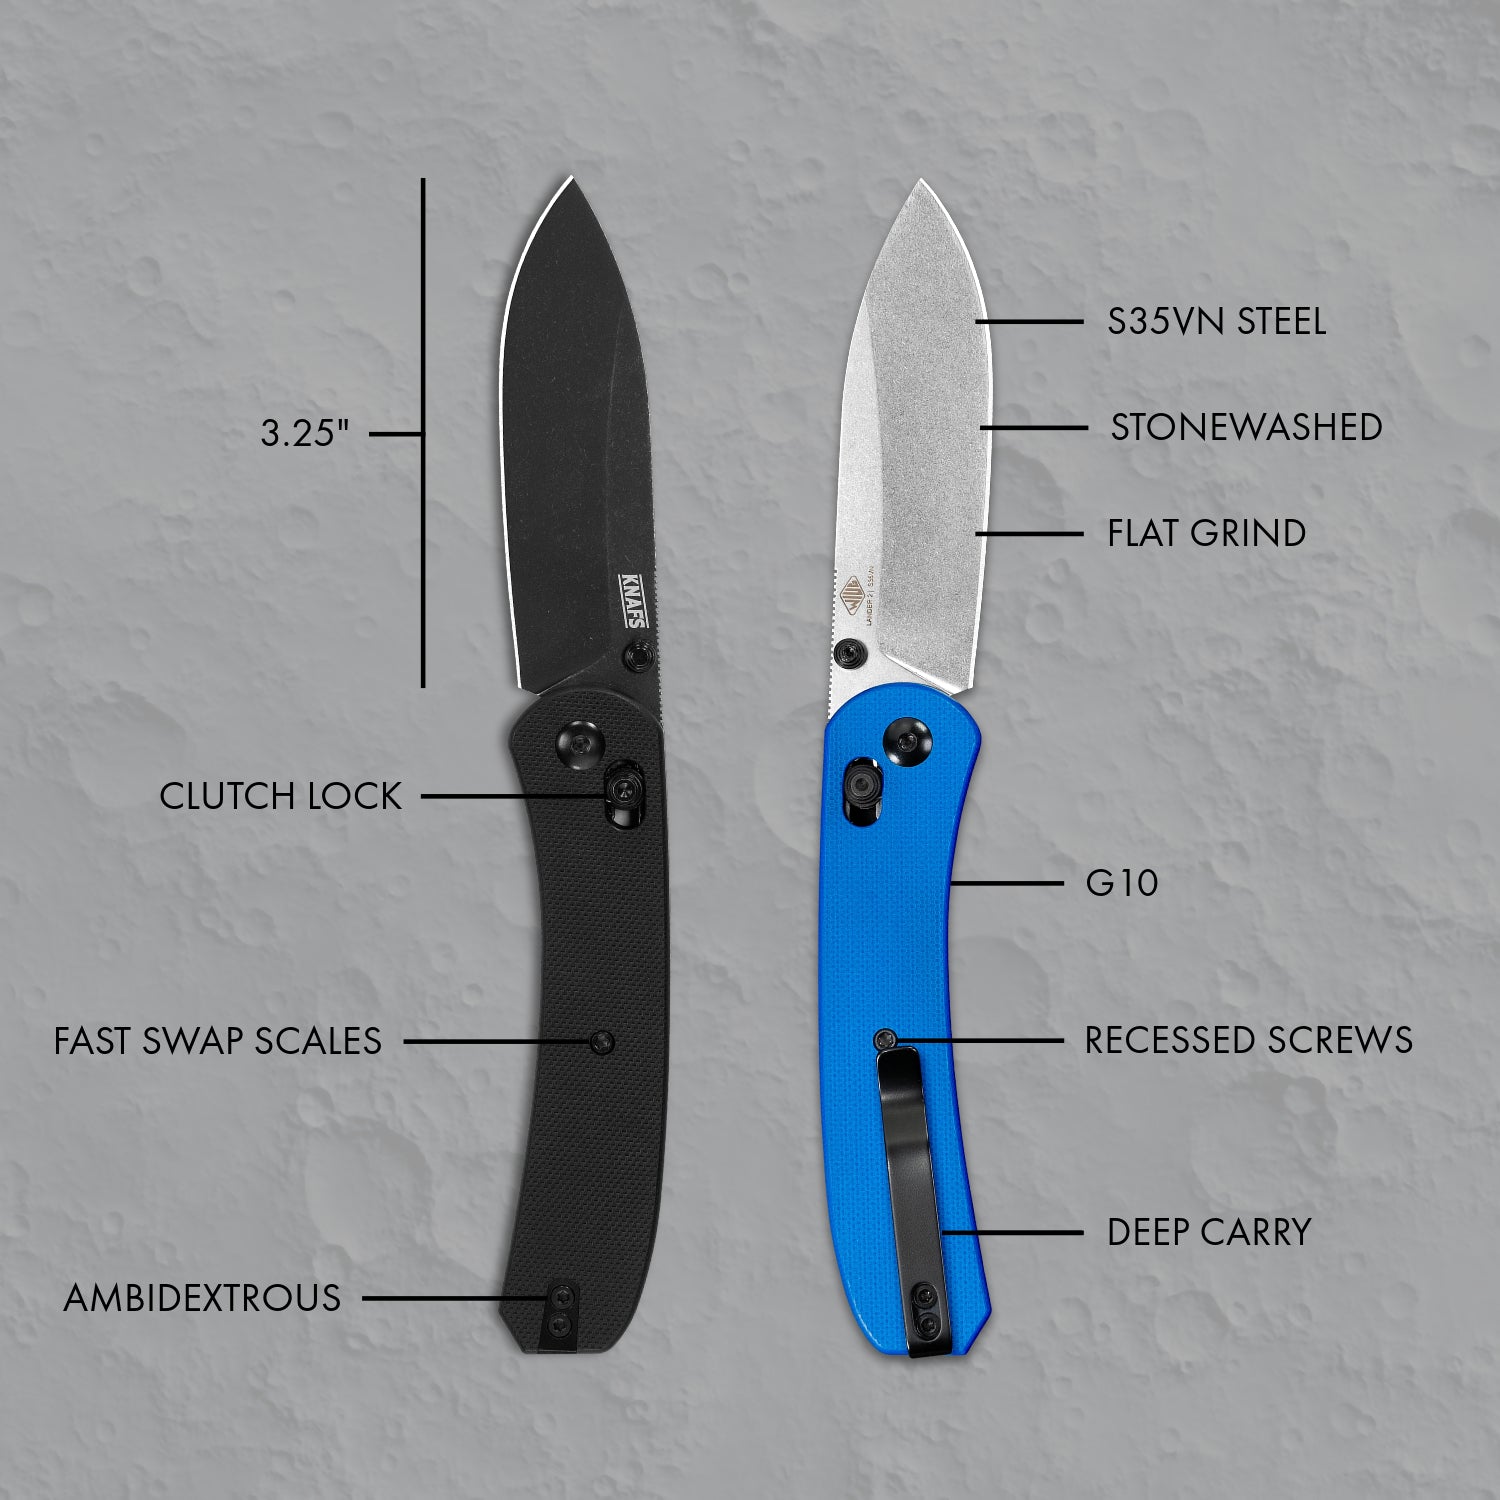 https://www.knafs.com/cdn/shop/files/KNAFS-00180-Lander-2-Pocket-Knife-Blue-G10-Clutch-Lock-spec-graphic.jpg?v=1701451651